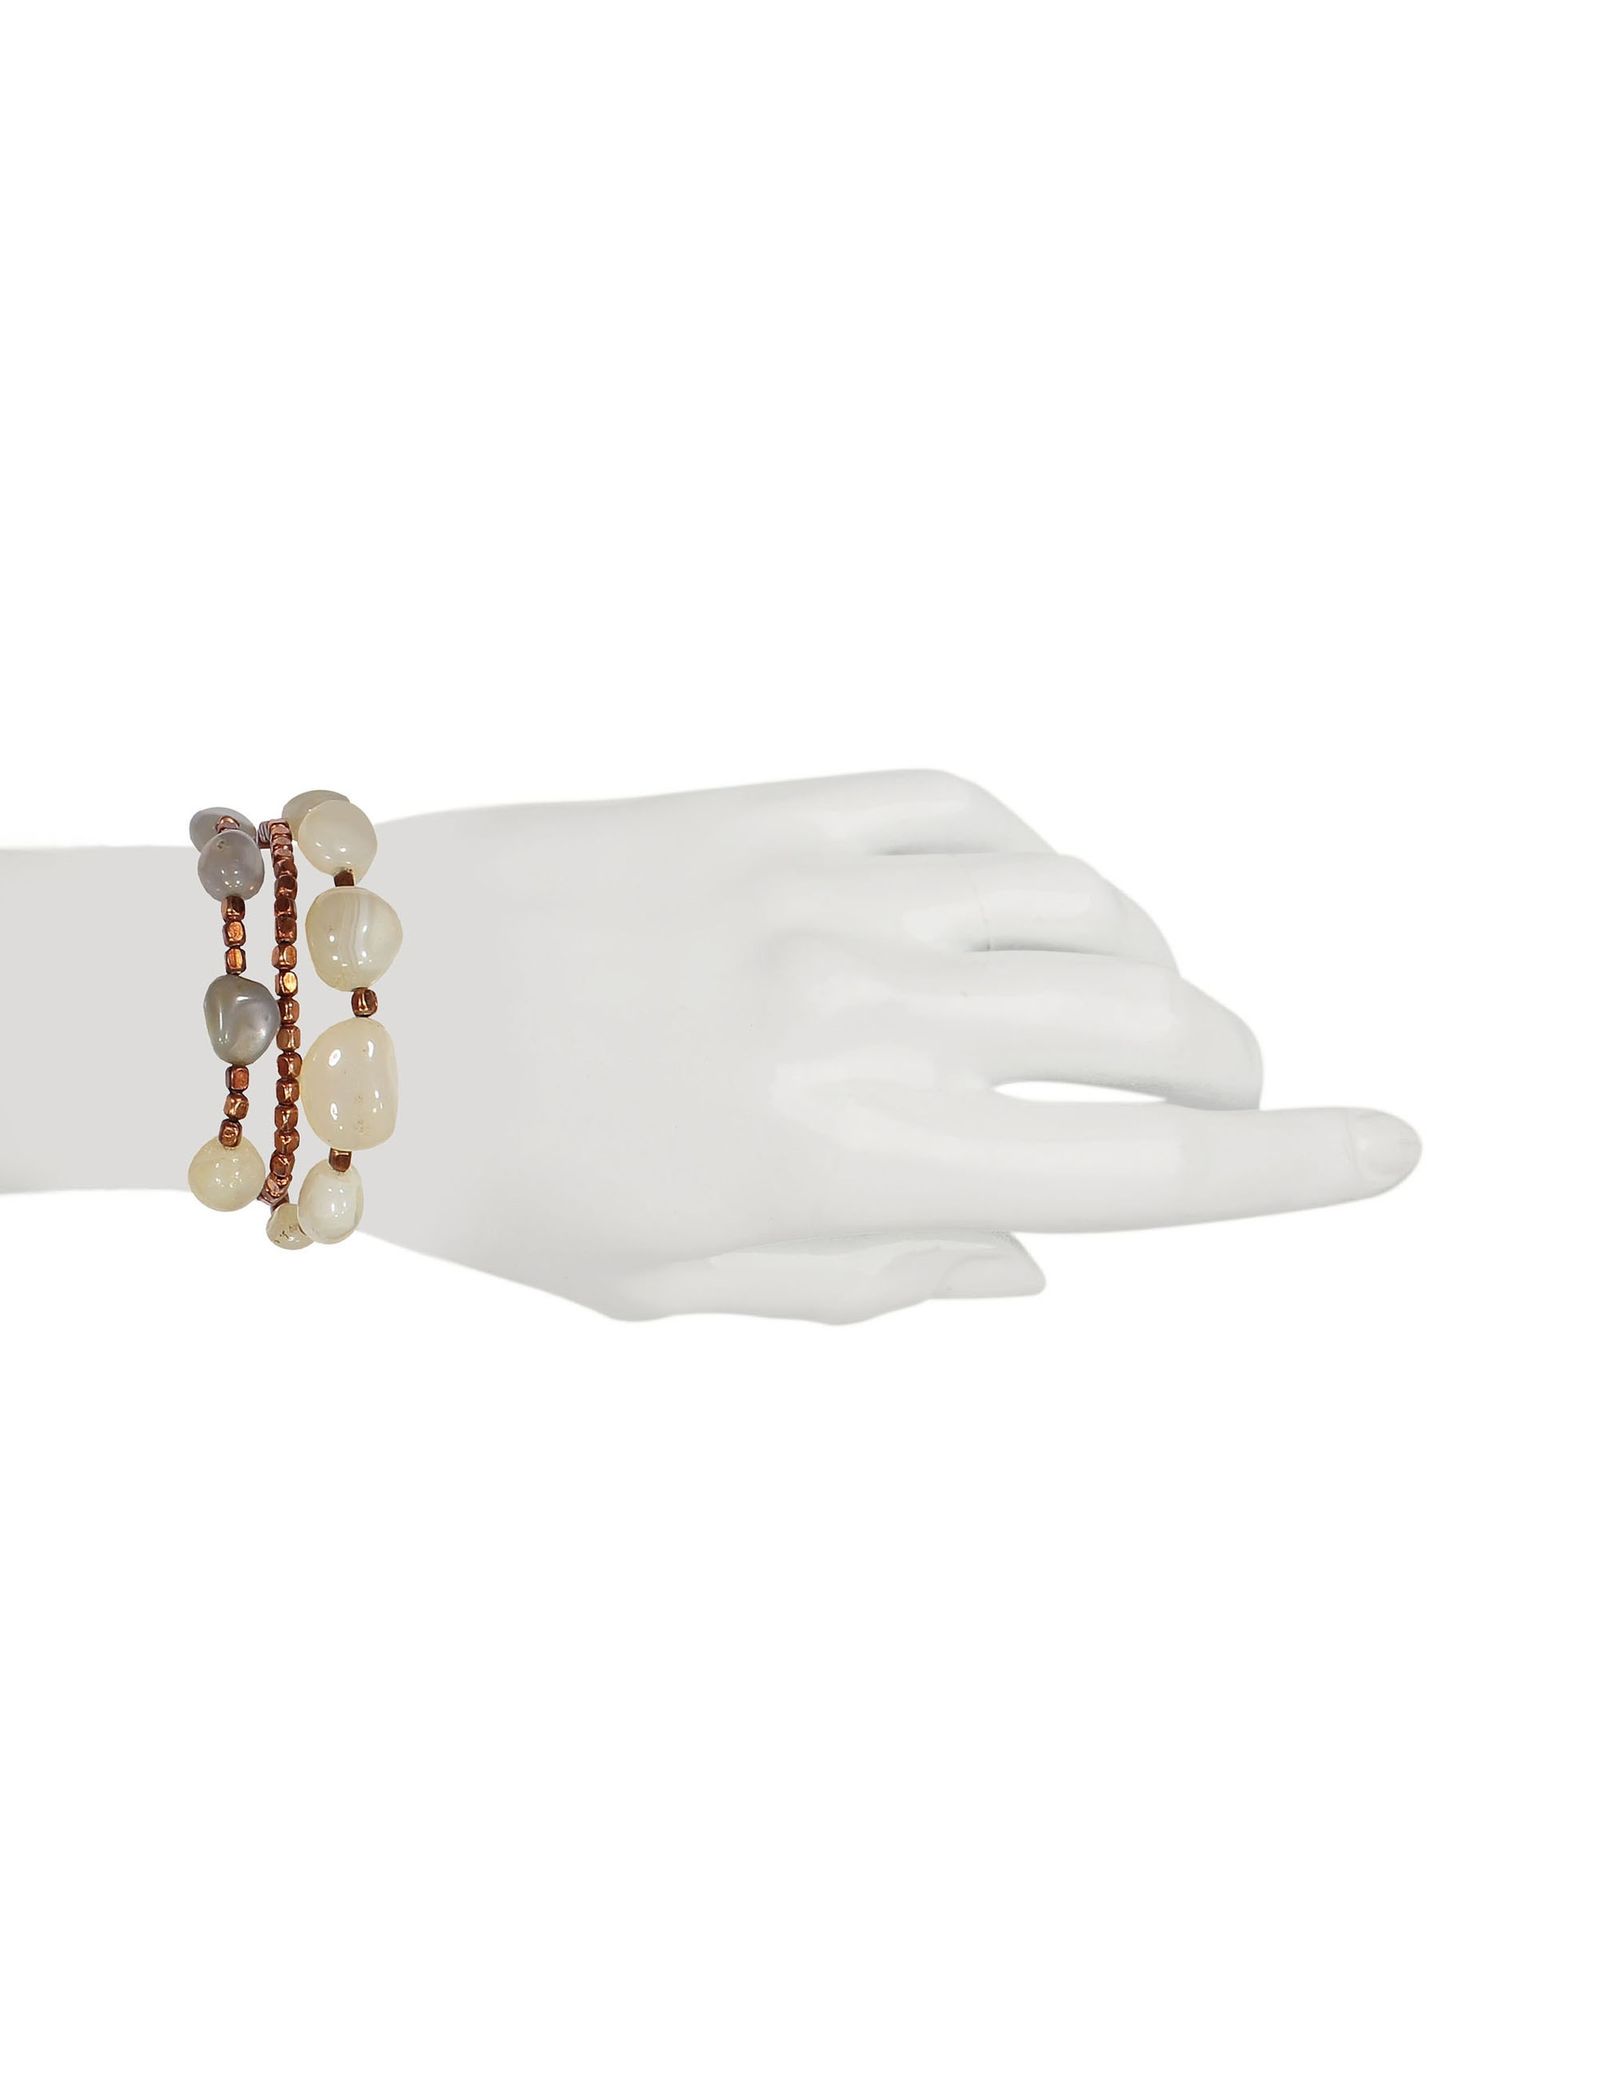 دستبند زنانه بسته 3 عددی - پونت روما تک سایز - مسي - 12